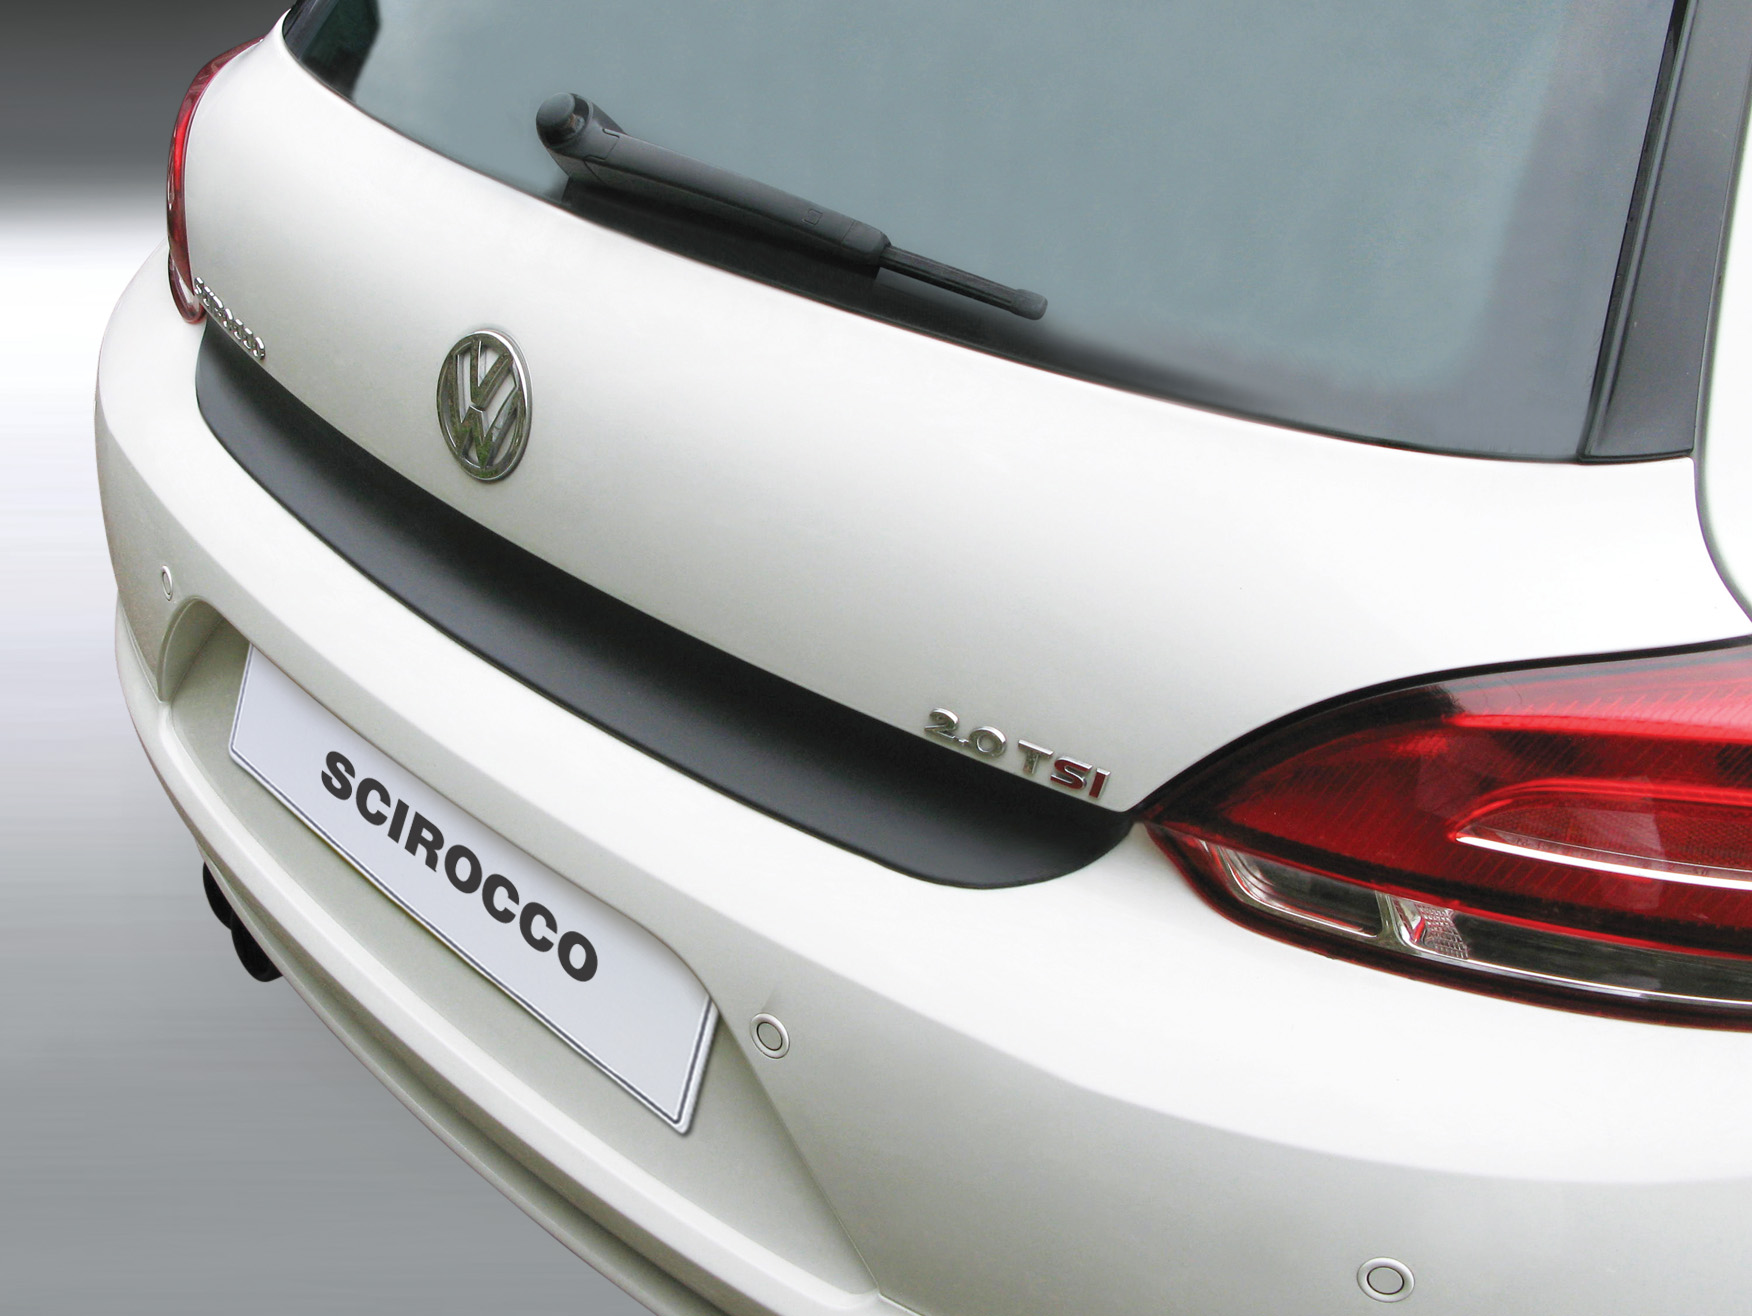 Ladekantenschutz mit Abkantung passend für 08.2008 Volkswagen Facelift), Farbe Aroba VW (vor | Scirocco BJ. ABS schwarz 03.2014 bis ab